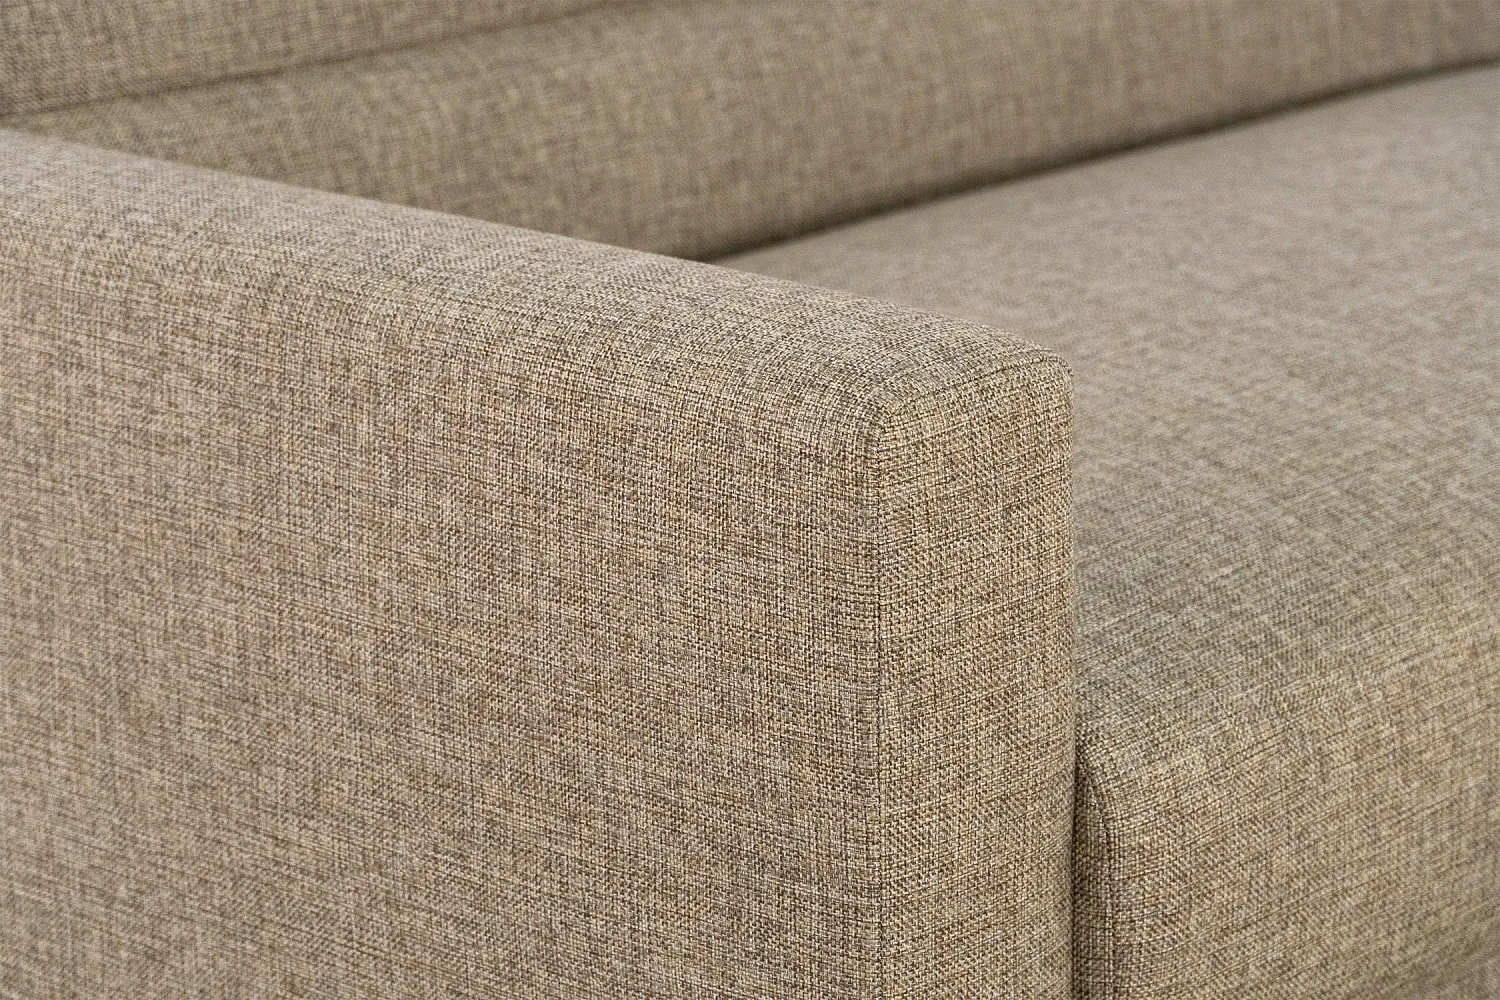 Wool Caramel ткань Боровичи диван Виктория -5